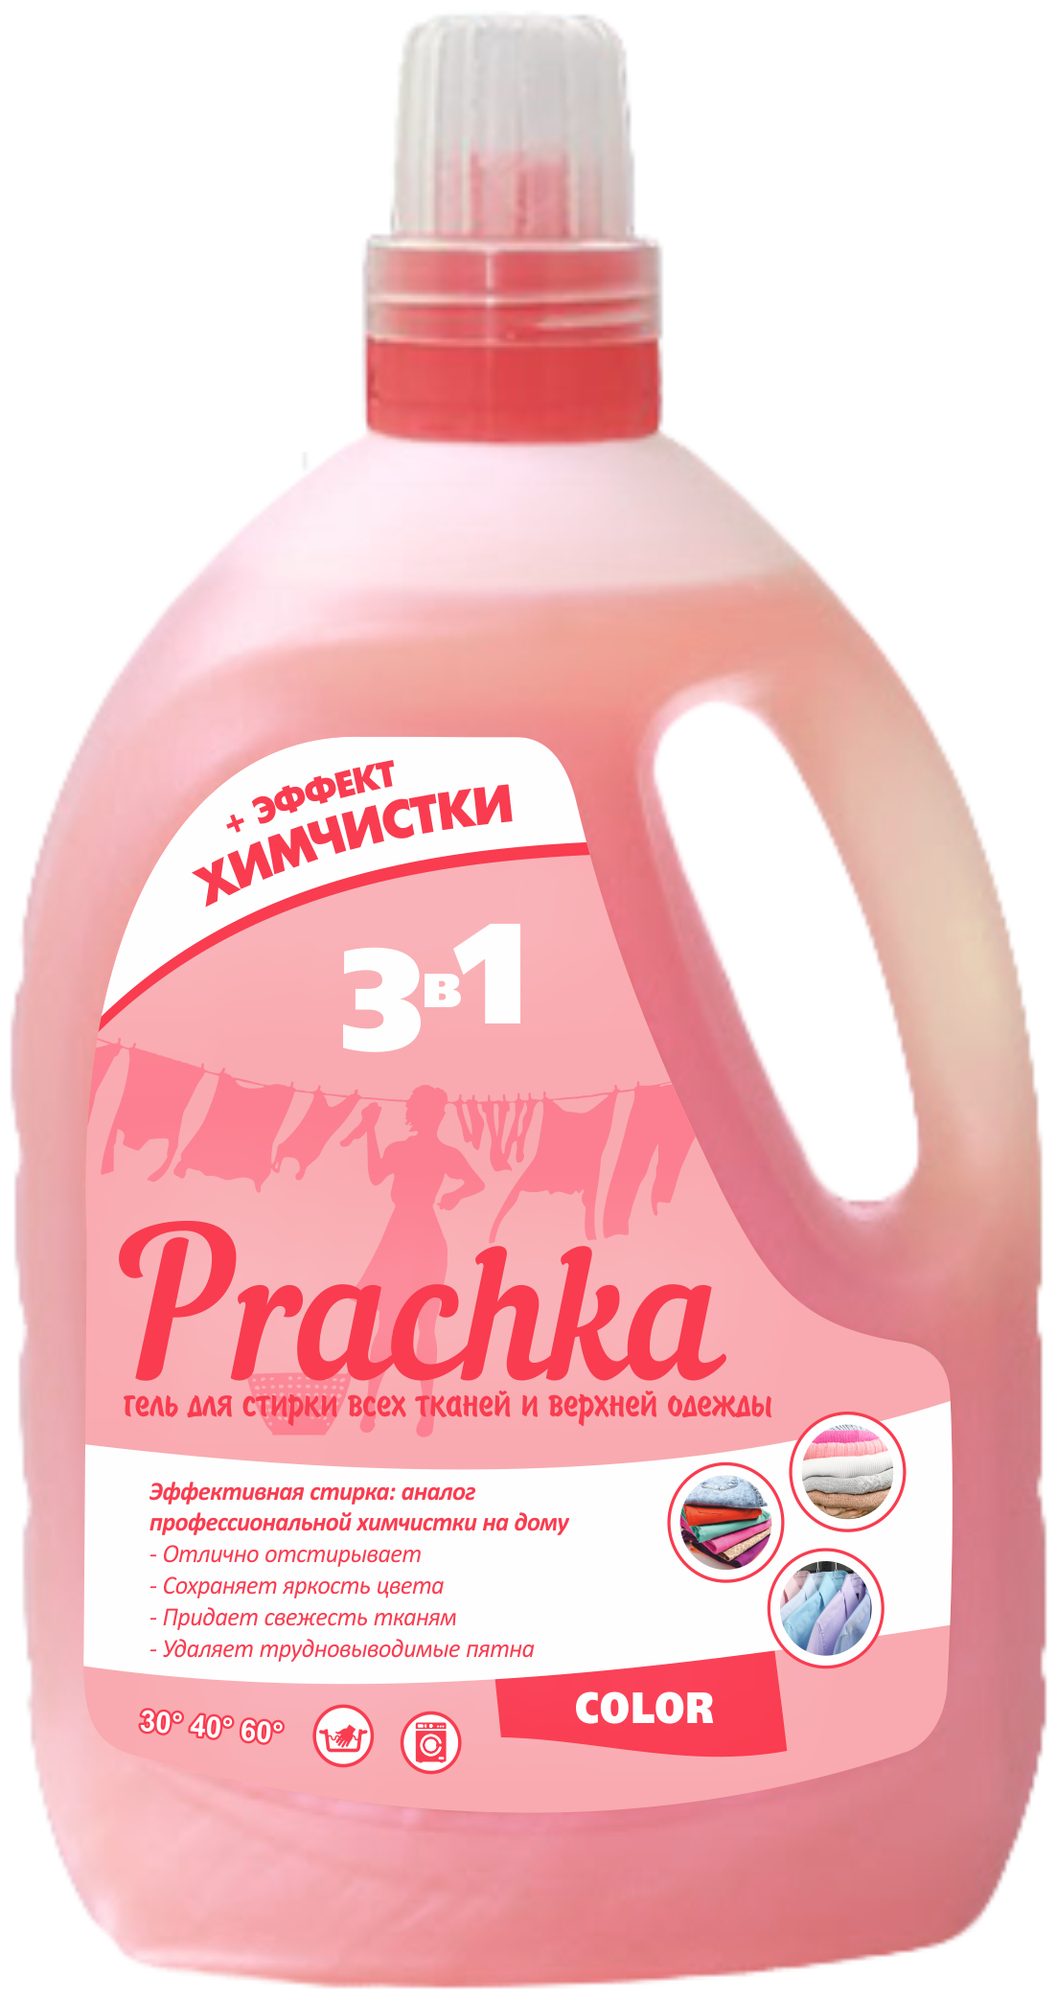 Гель для стирки "Prachka" Color, 3300 мл